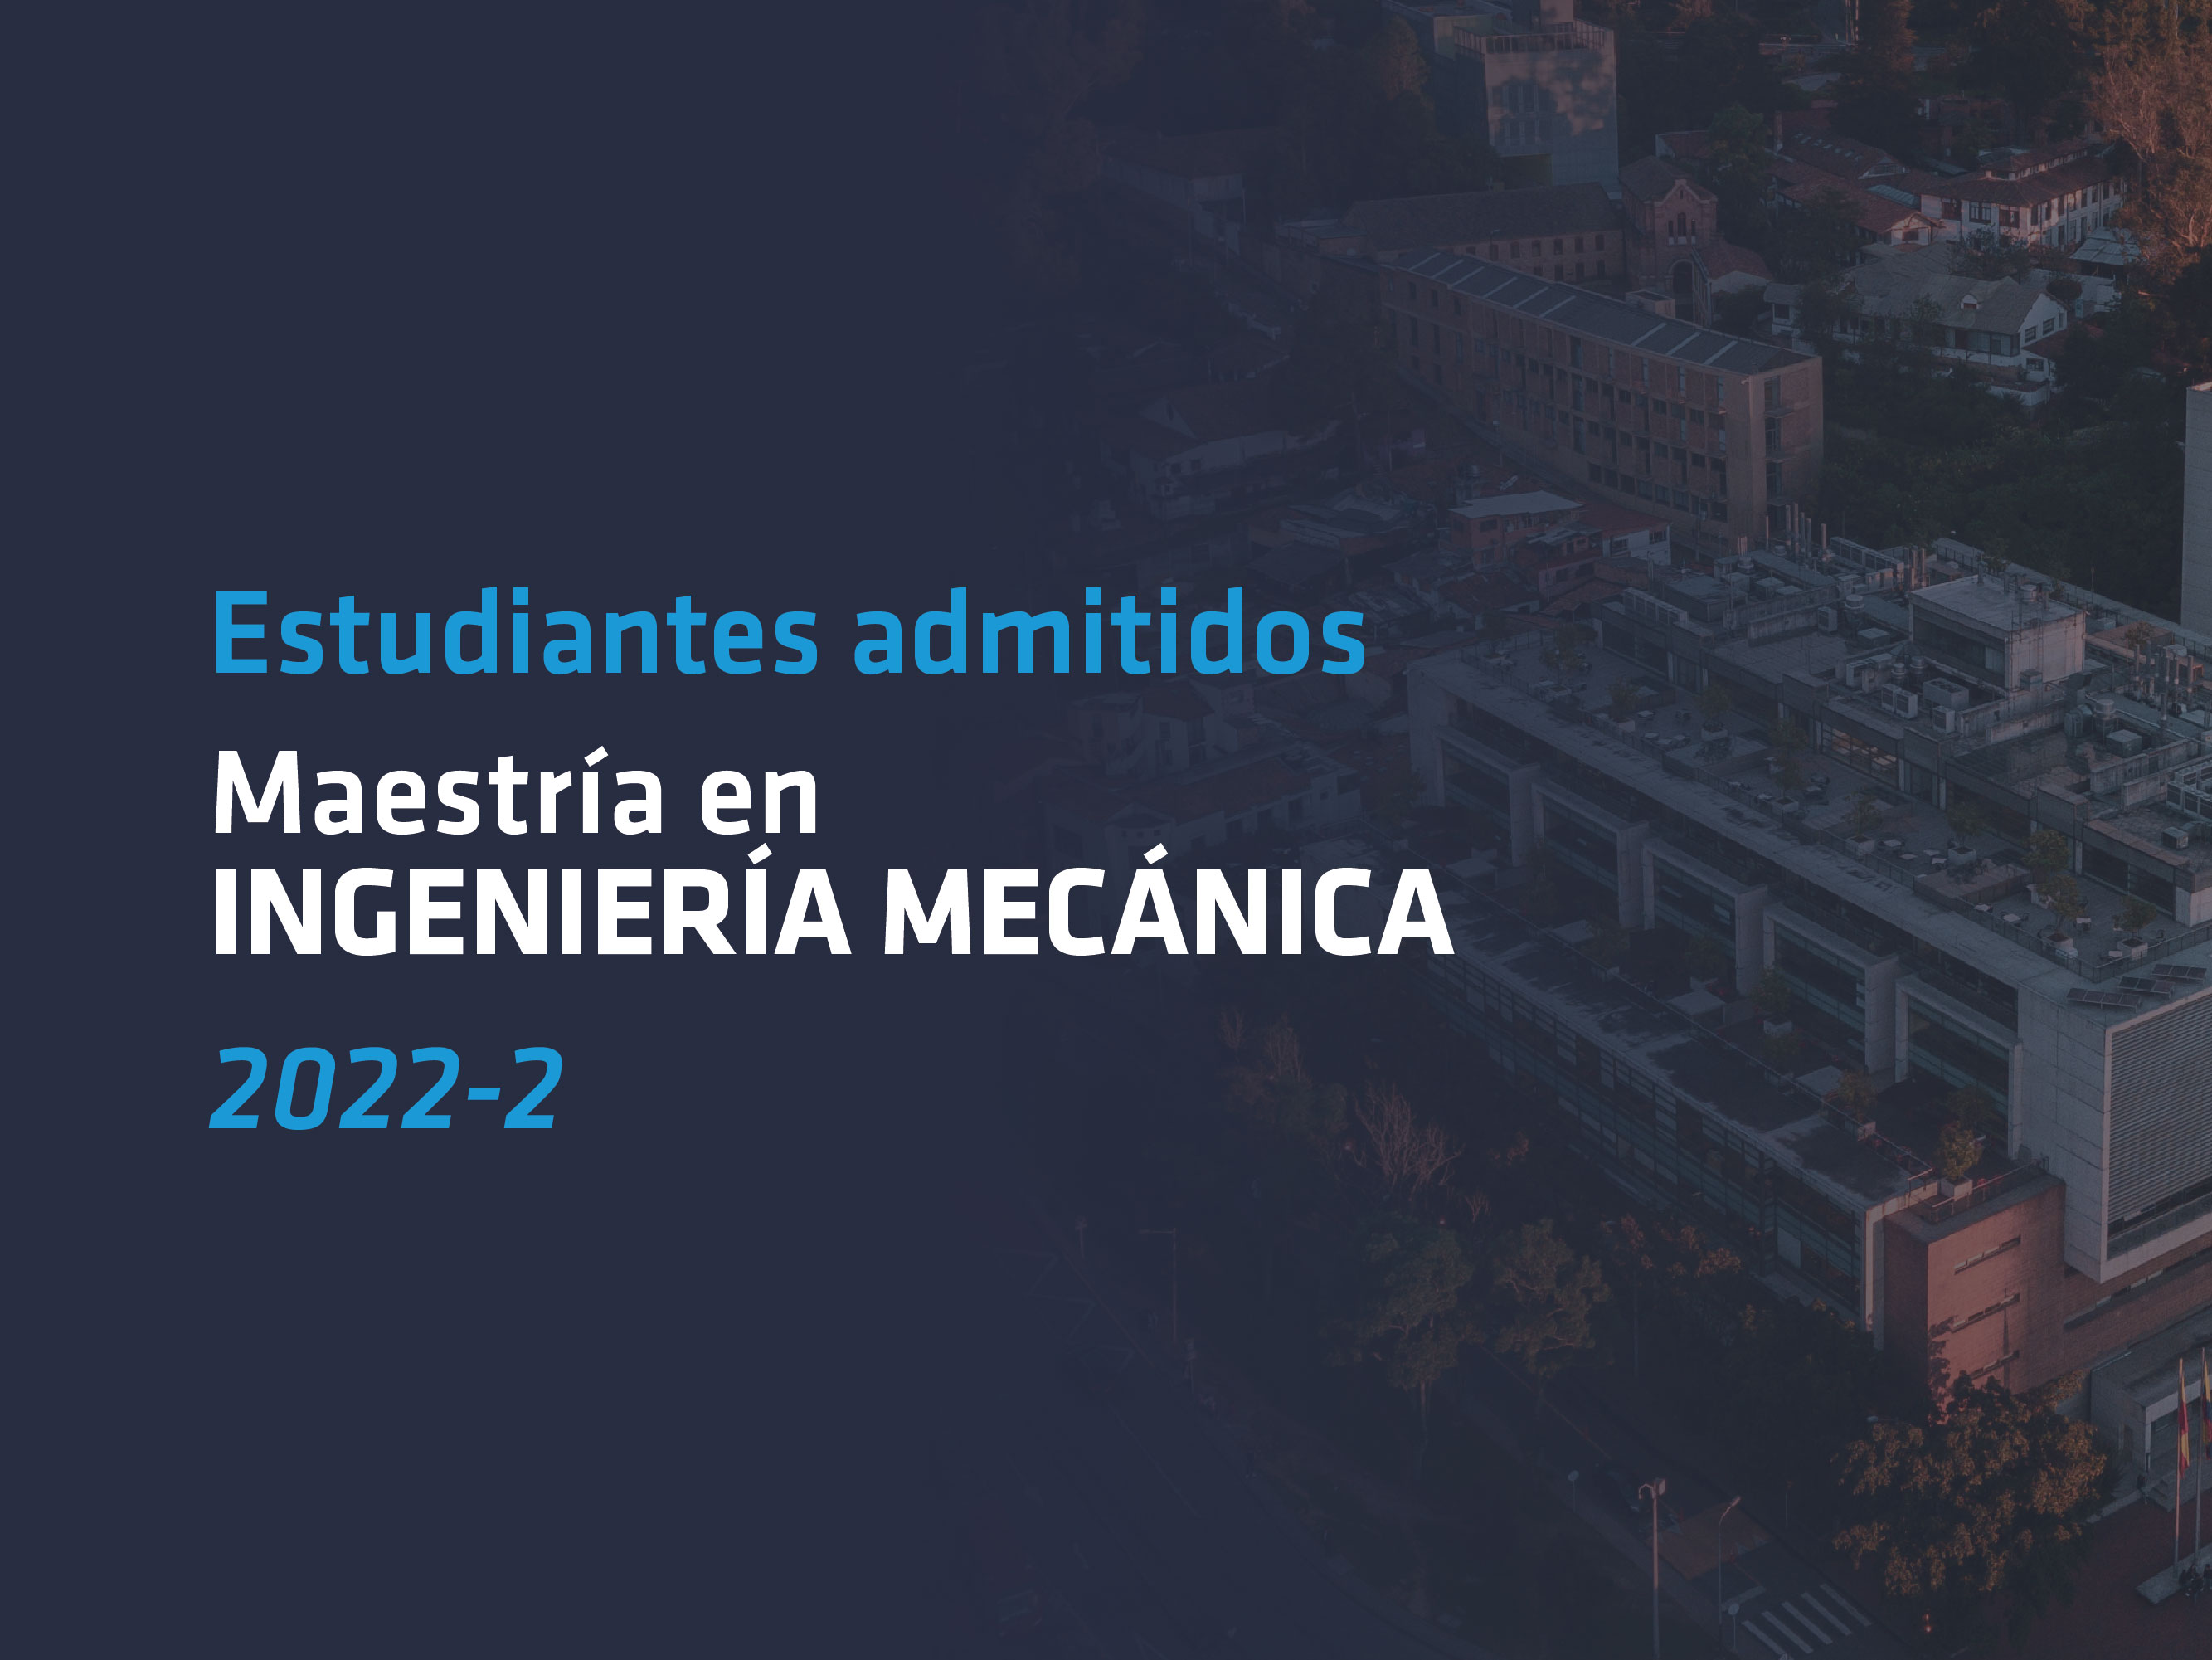 Aspirantes admitidos a las maestria de ingenieria mecanica 2022-2